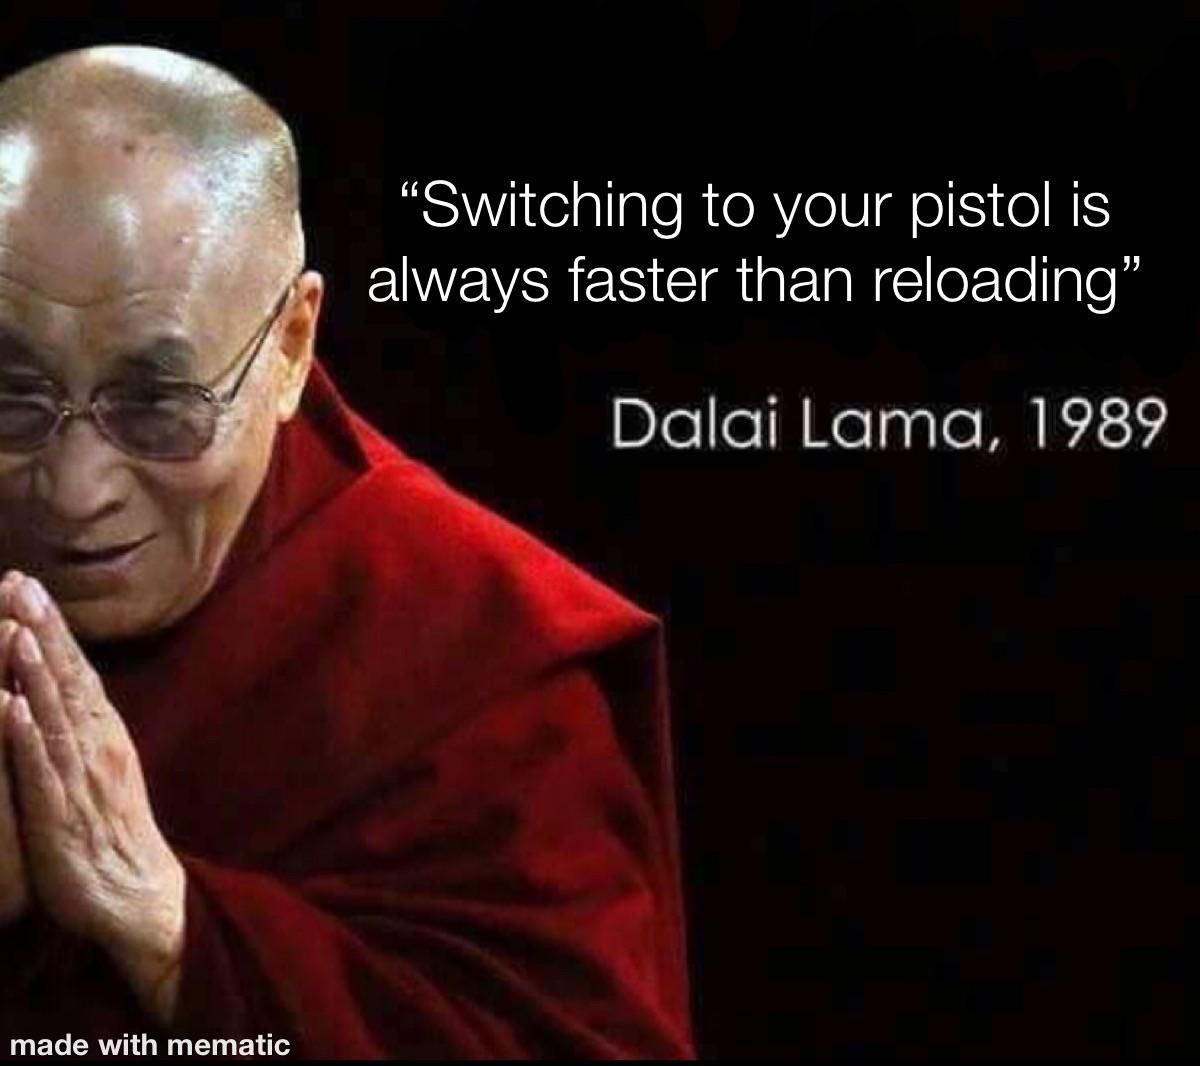 Dalai Lama is a gamer *CONFIRMED*